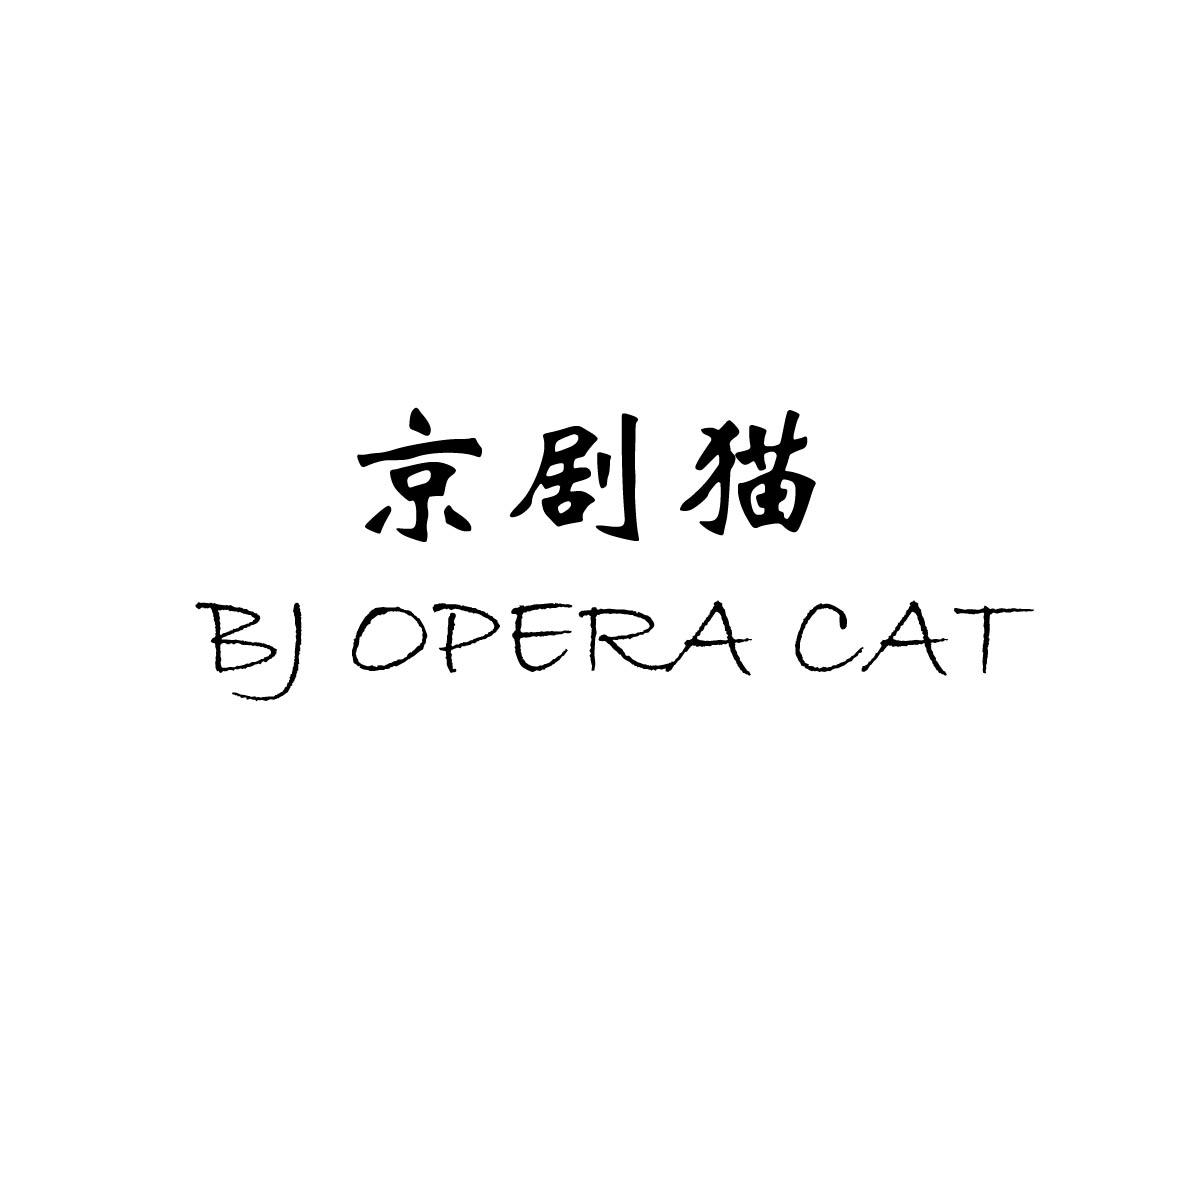 京剧猫 BJ OPERA CAT 商标公告